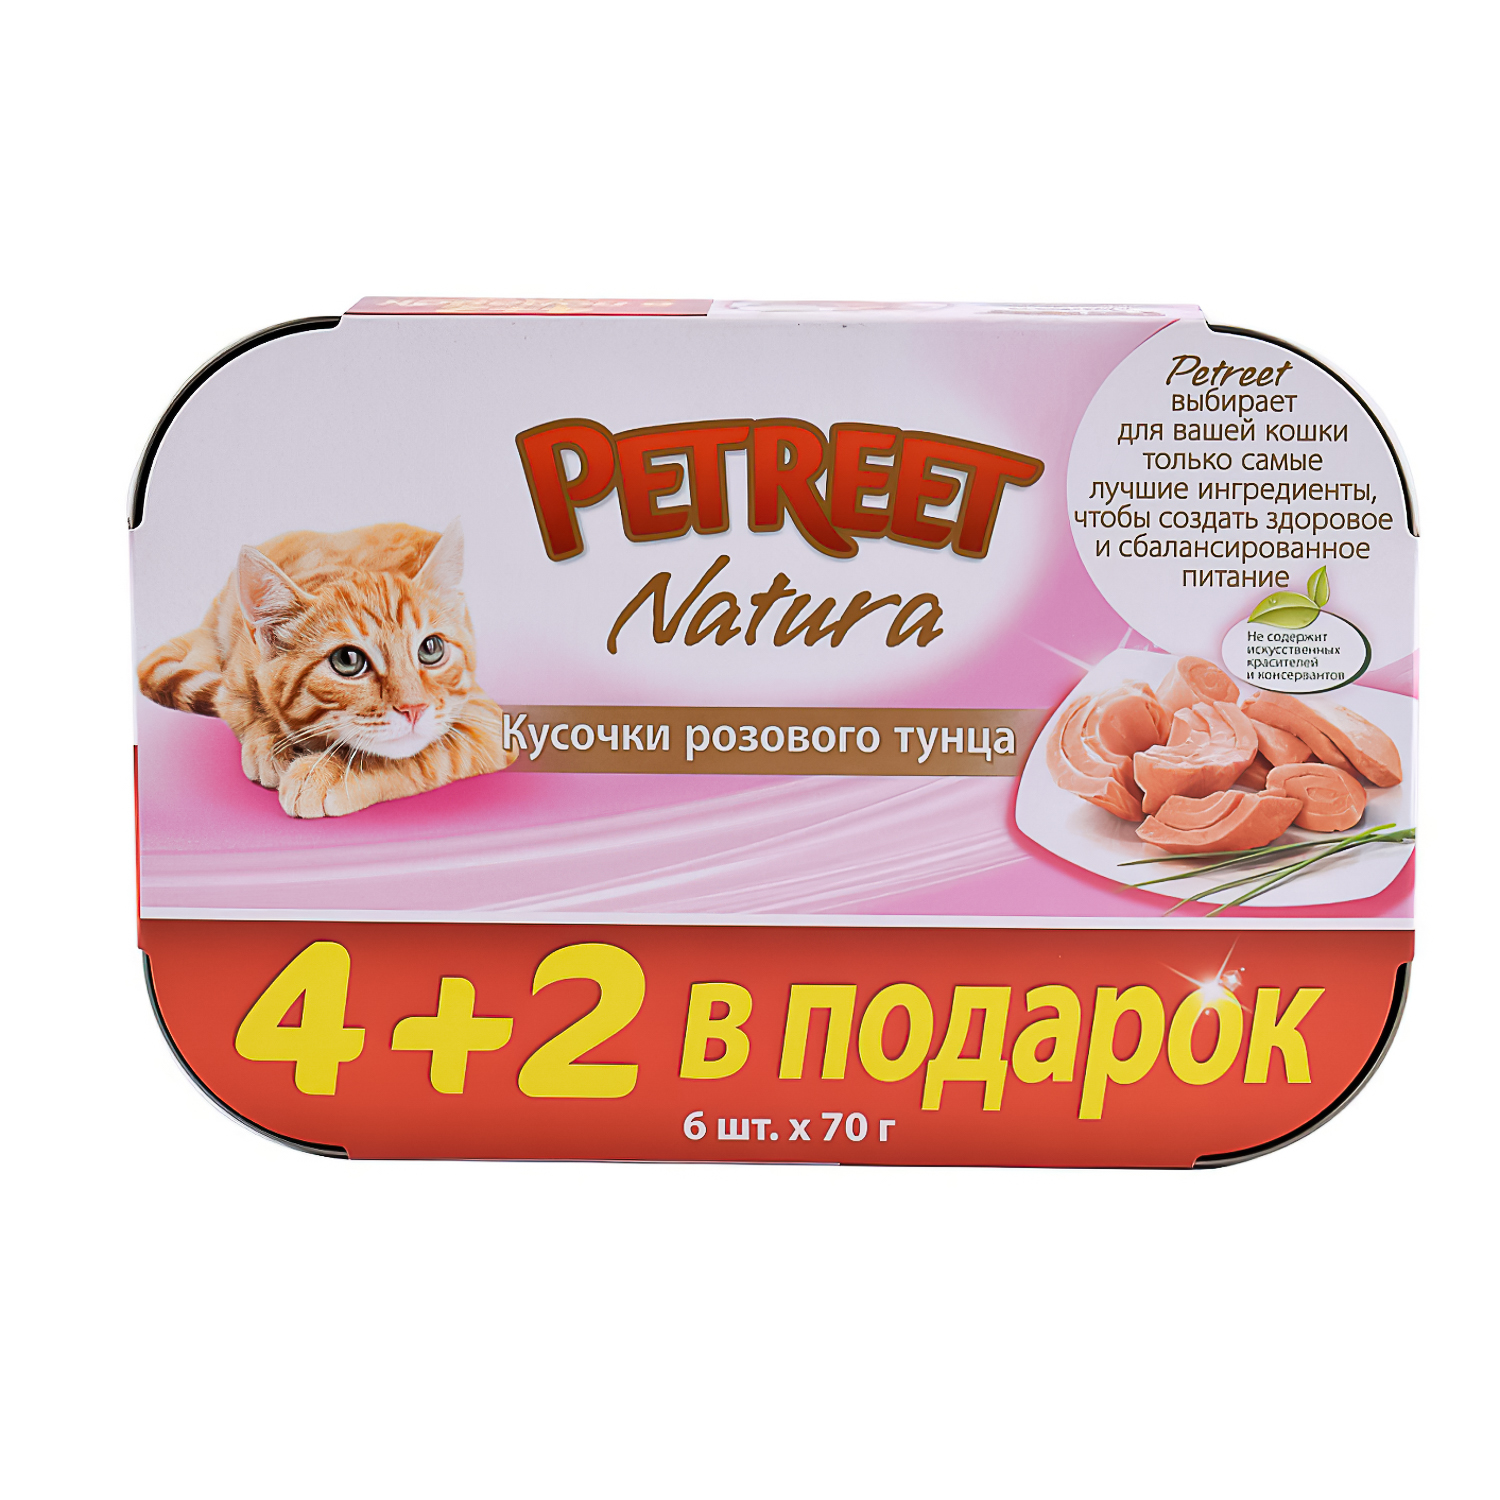 Консервы для кошек Petreet Multipack кусочки розового тунца 4 + 2 шт. в подарок 70 г х 6